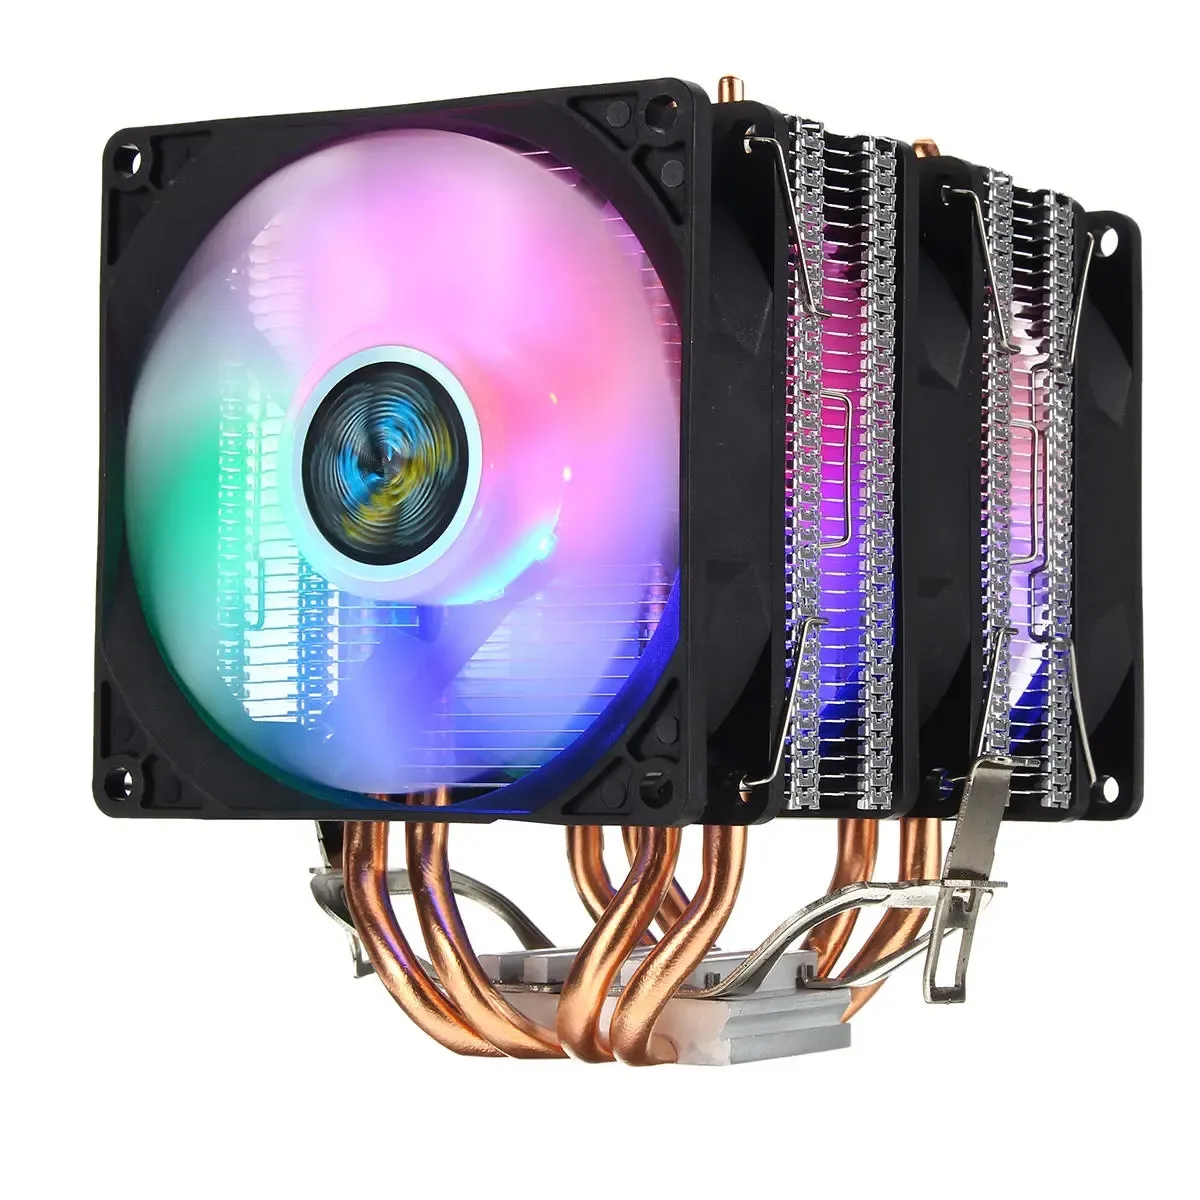 3 pin potrójne fanów cztery miedziane rury ciepła kolorowe led światła CPU chłodzące wentylator chłodzący chłodnica do Intel AMD